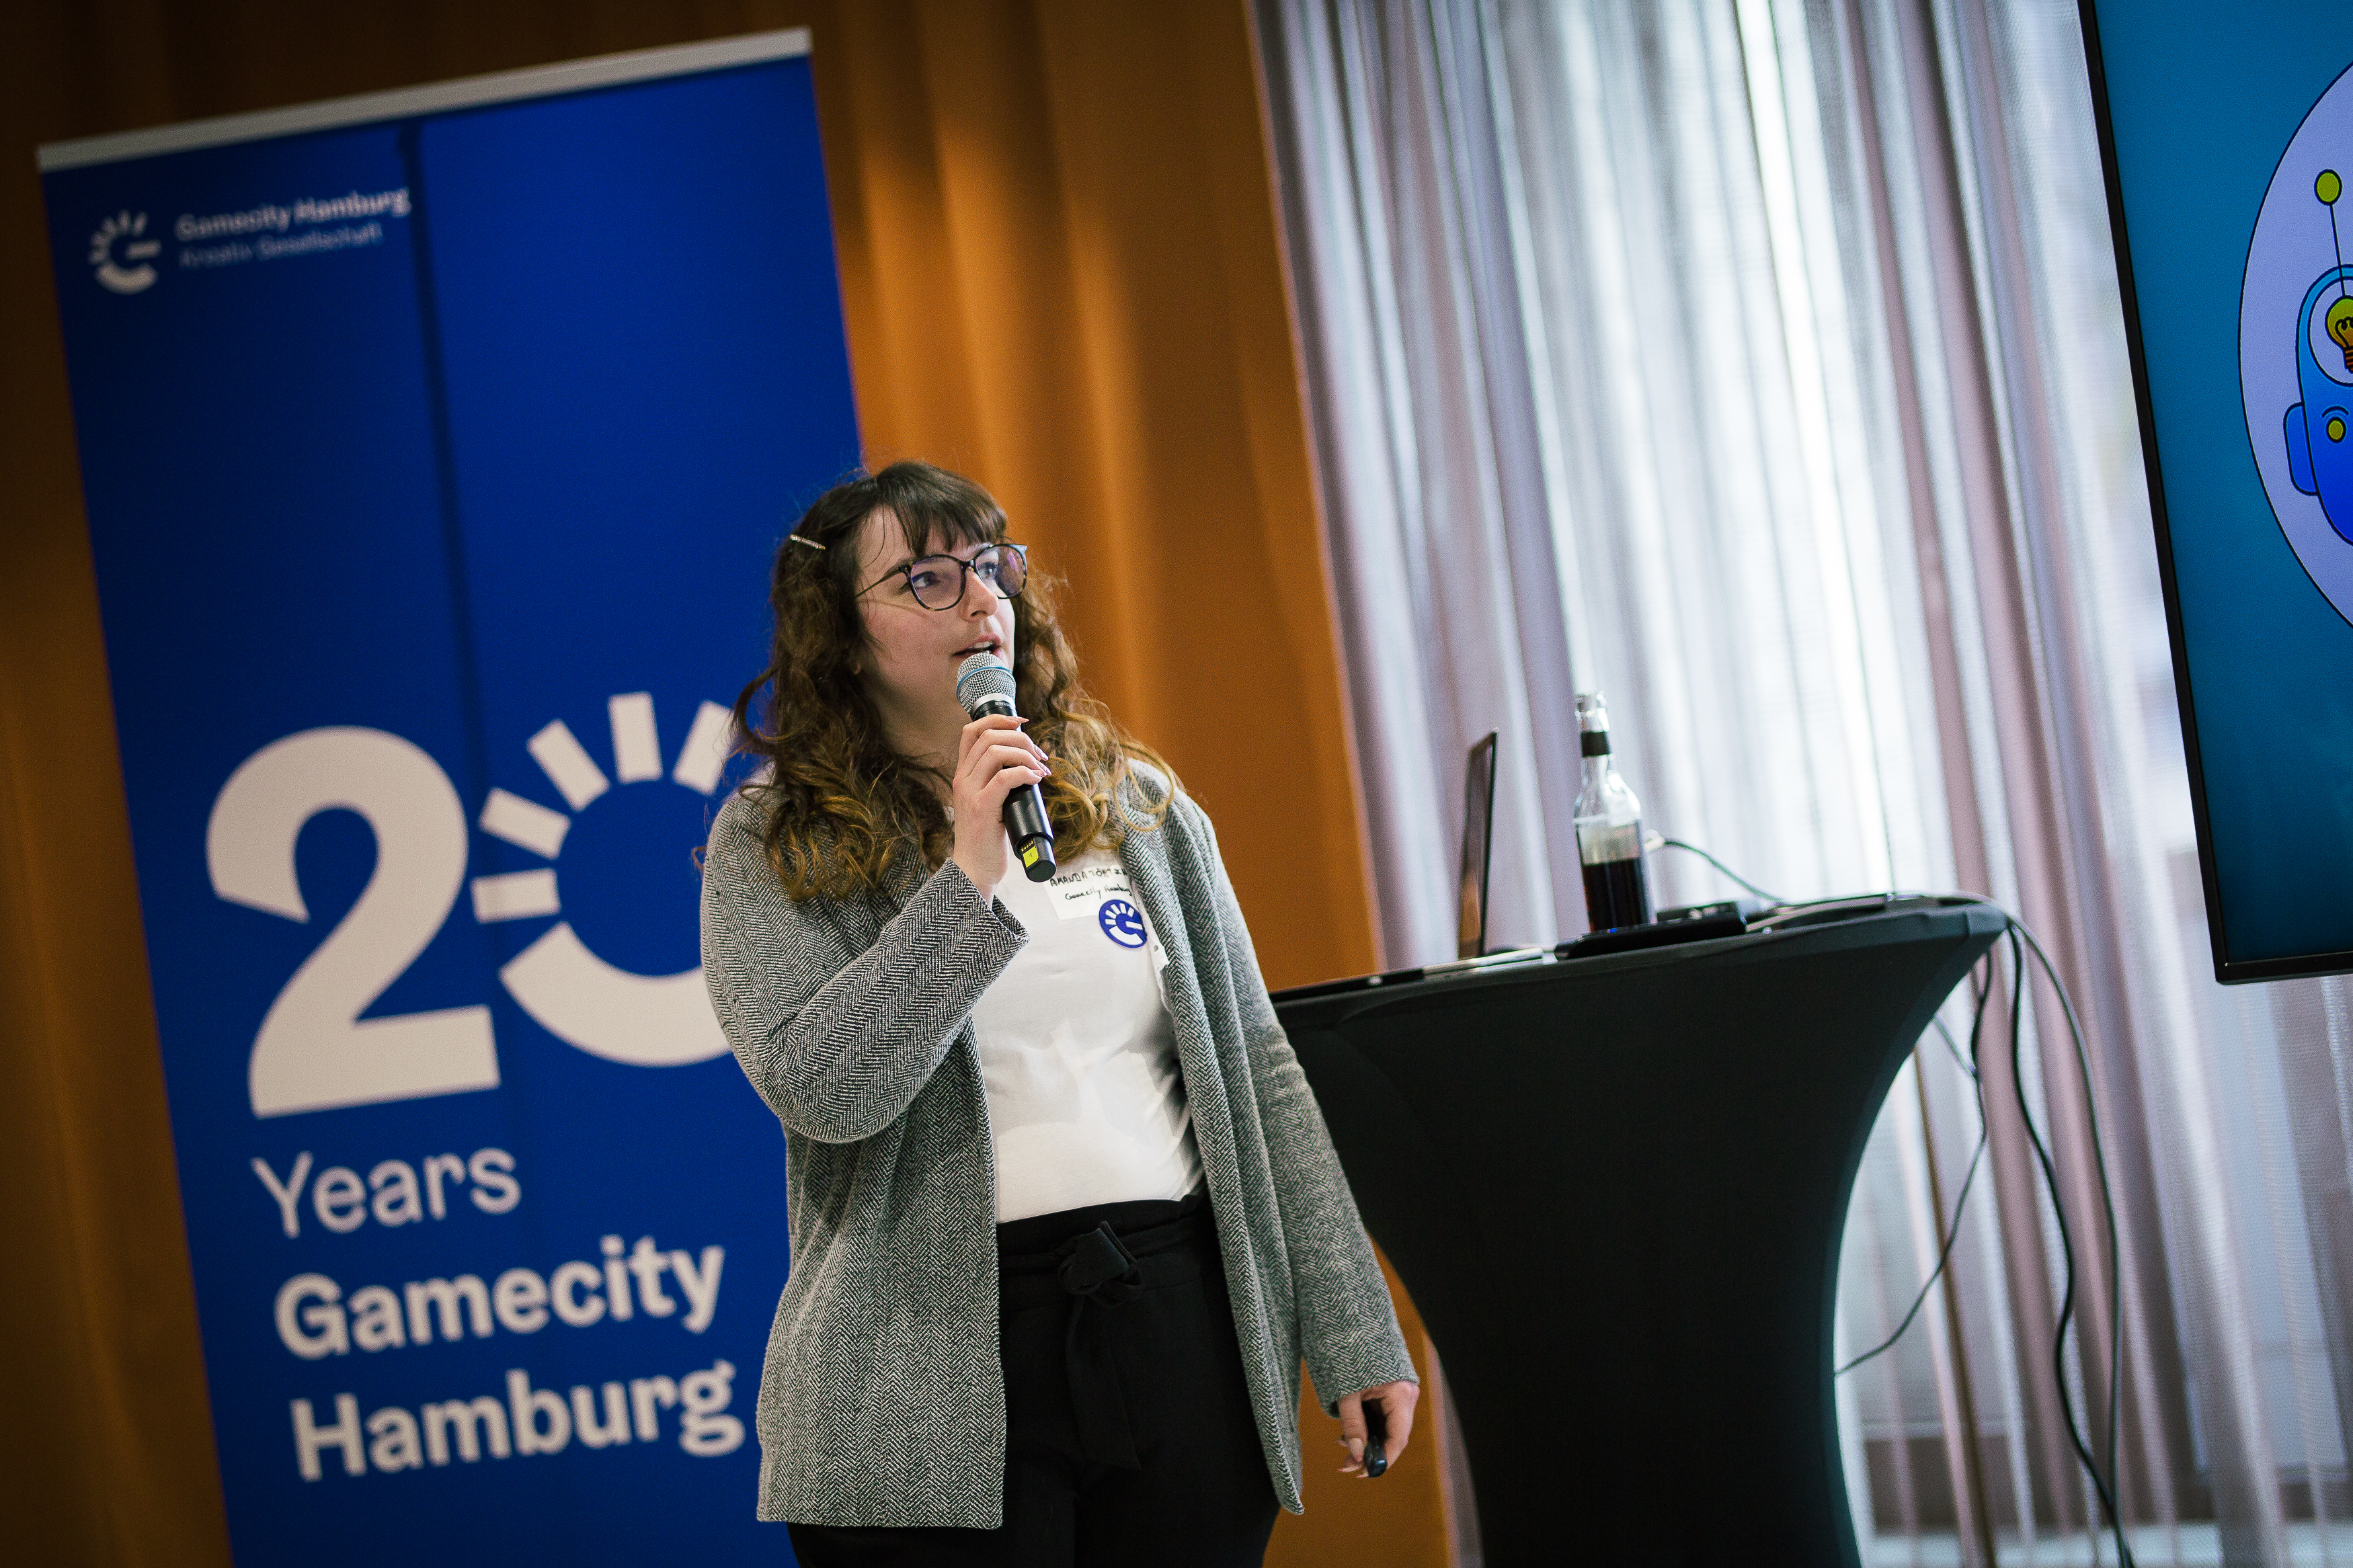 Amanda Förtsch (Gamecity Hamburg) gab Einblicke in Programm von Gamecity Hamburg und wie ansässige Entwickler*innen unterstützt werden